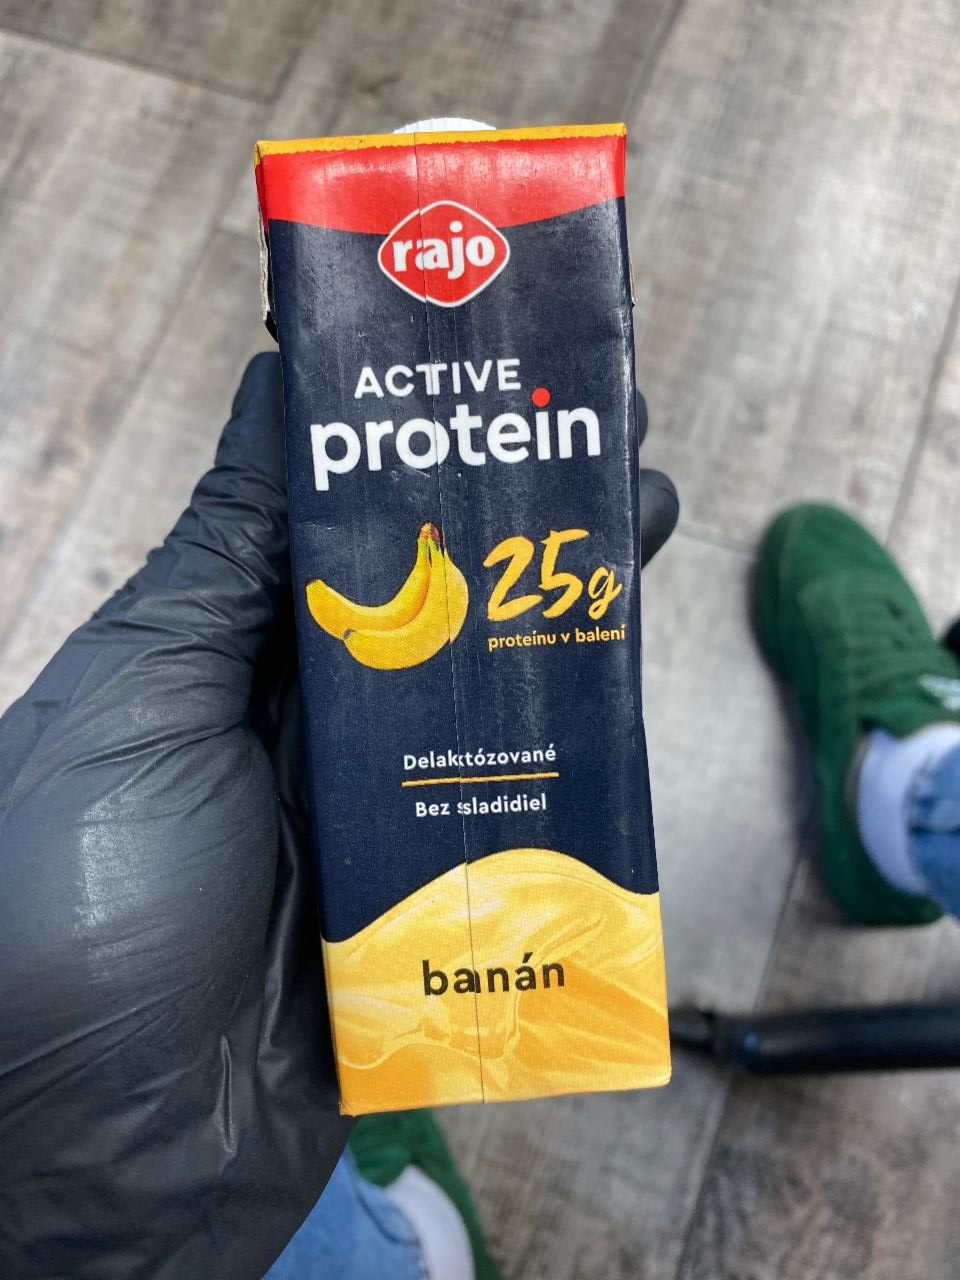 Képek - Rajo active protein banán